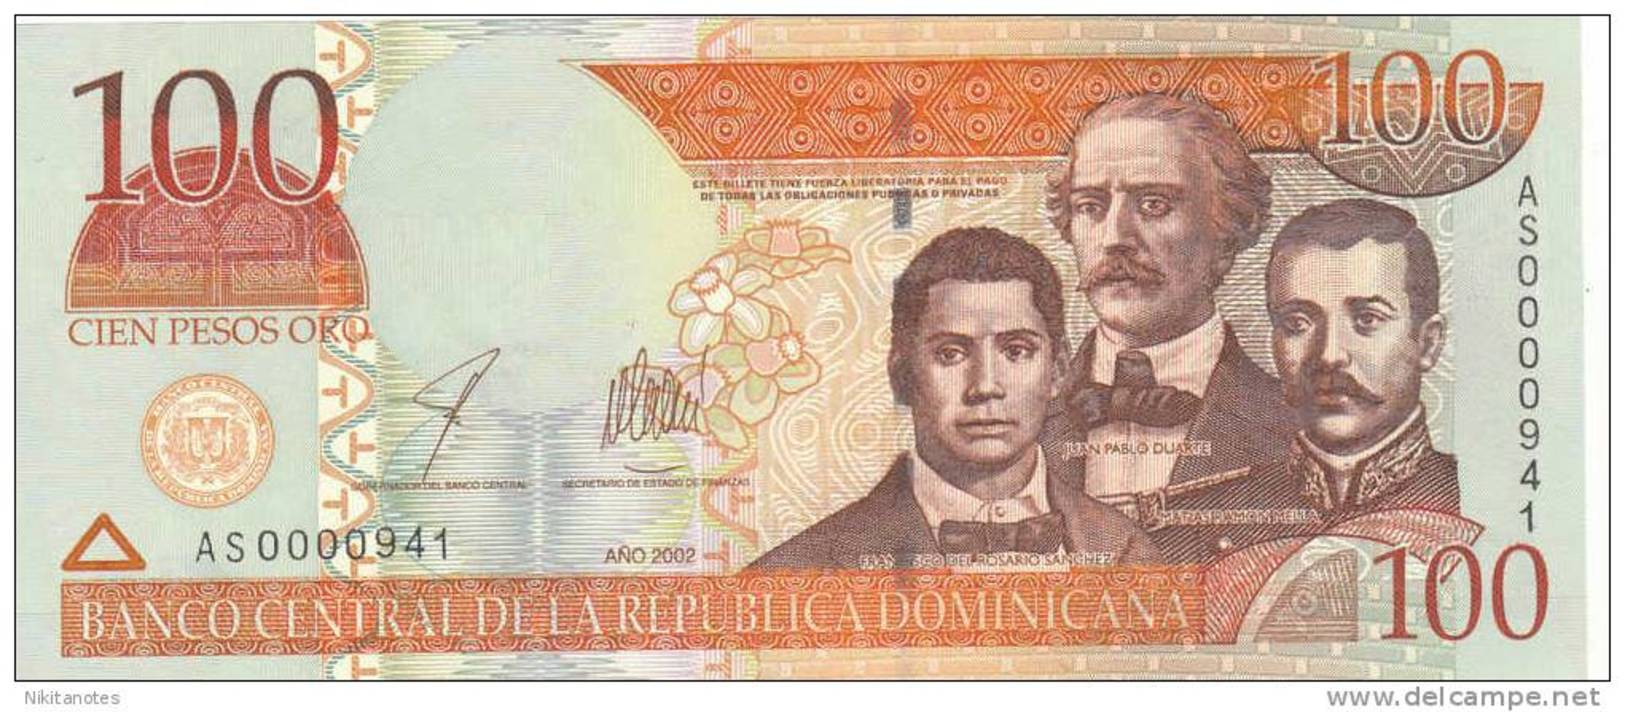 2002 DOMINICAN REPUBLIC 100 PESOS ORO UNC - Dominicana